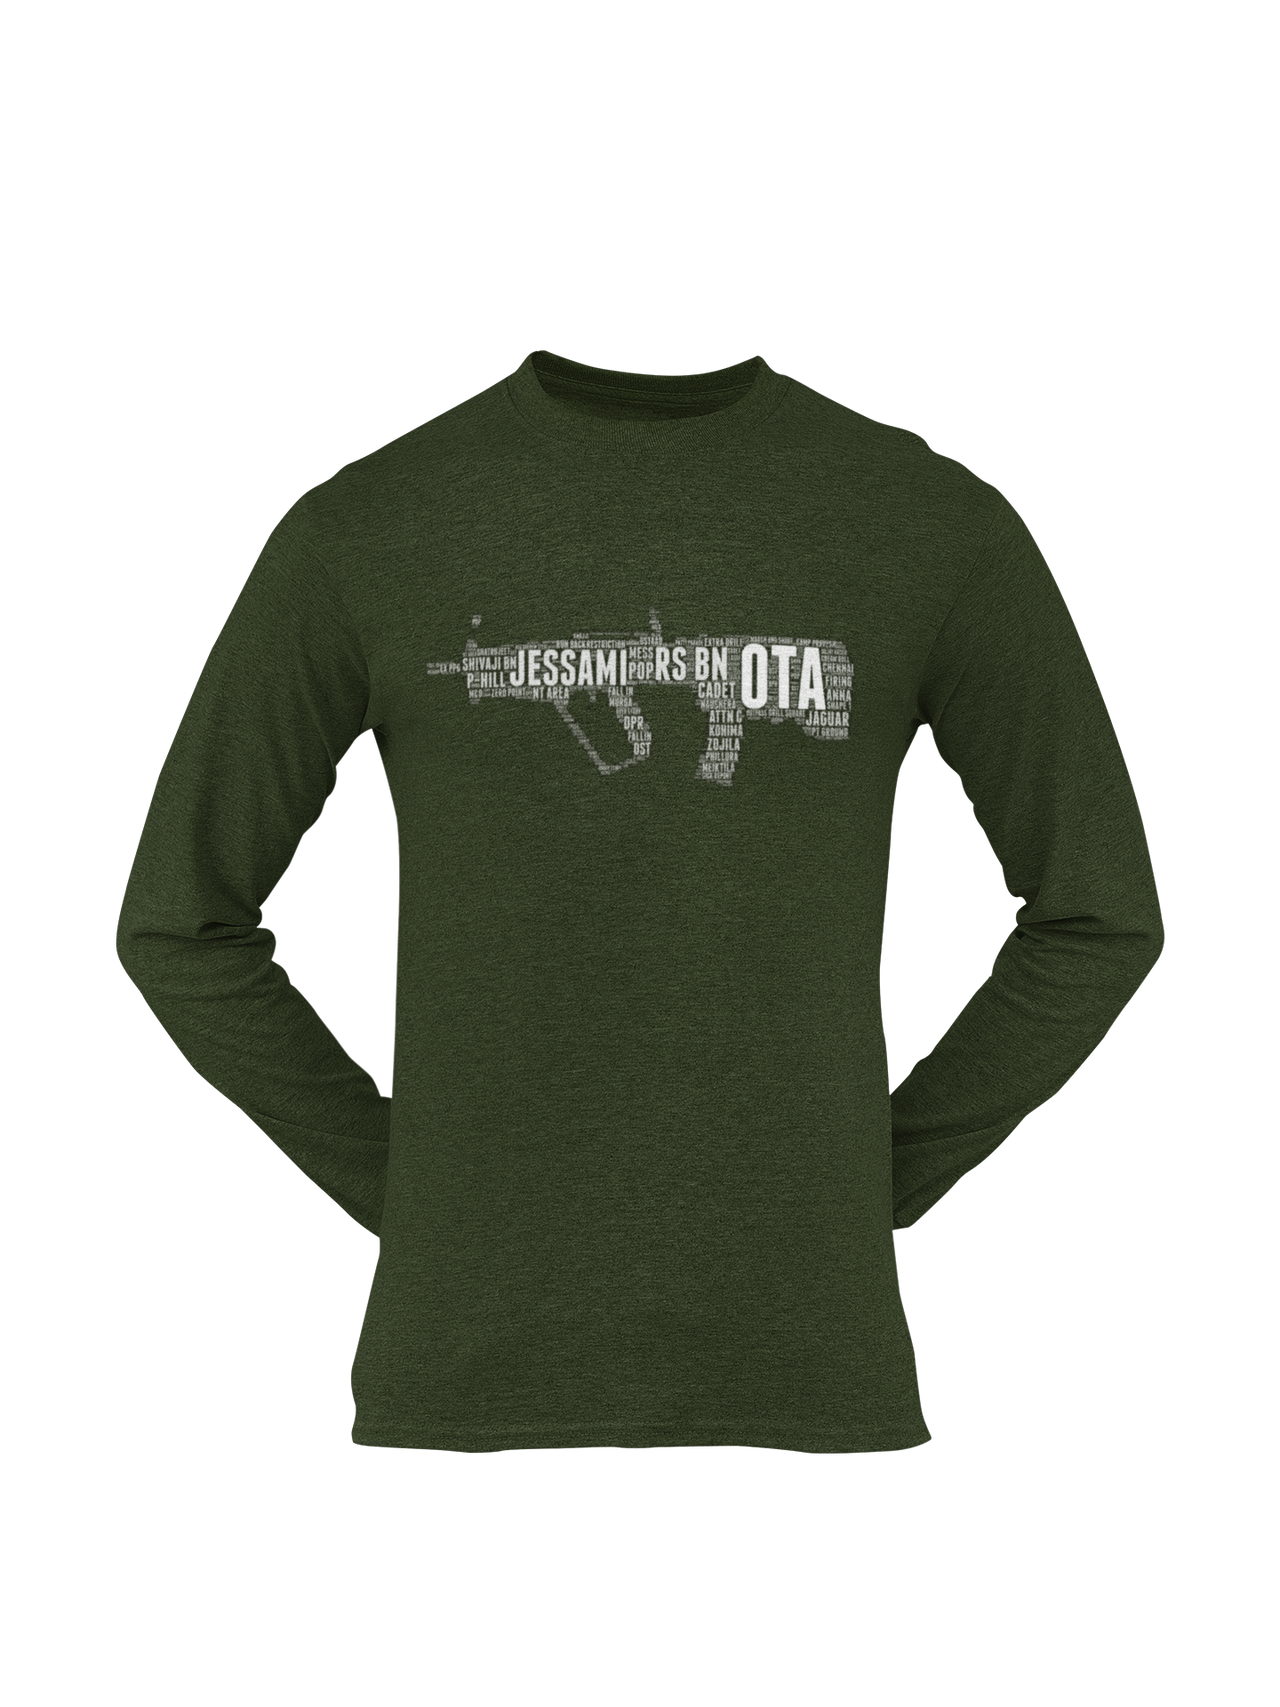 OTA T-shirt - Word Cloud Jessami - Tavor (Men)